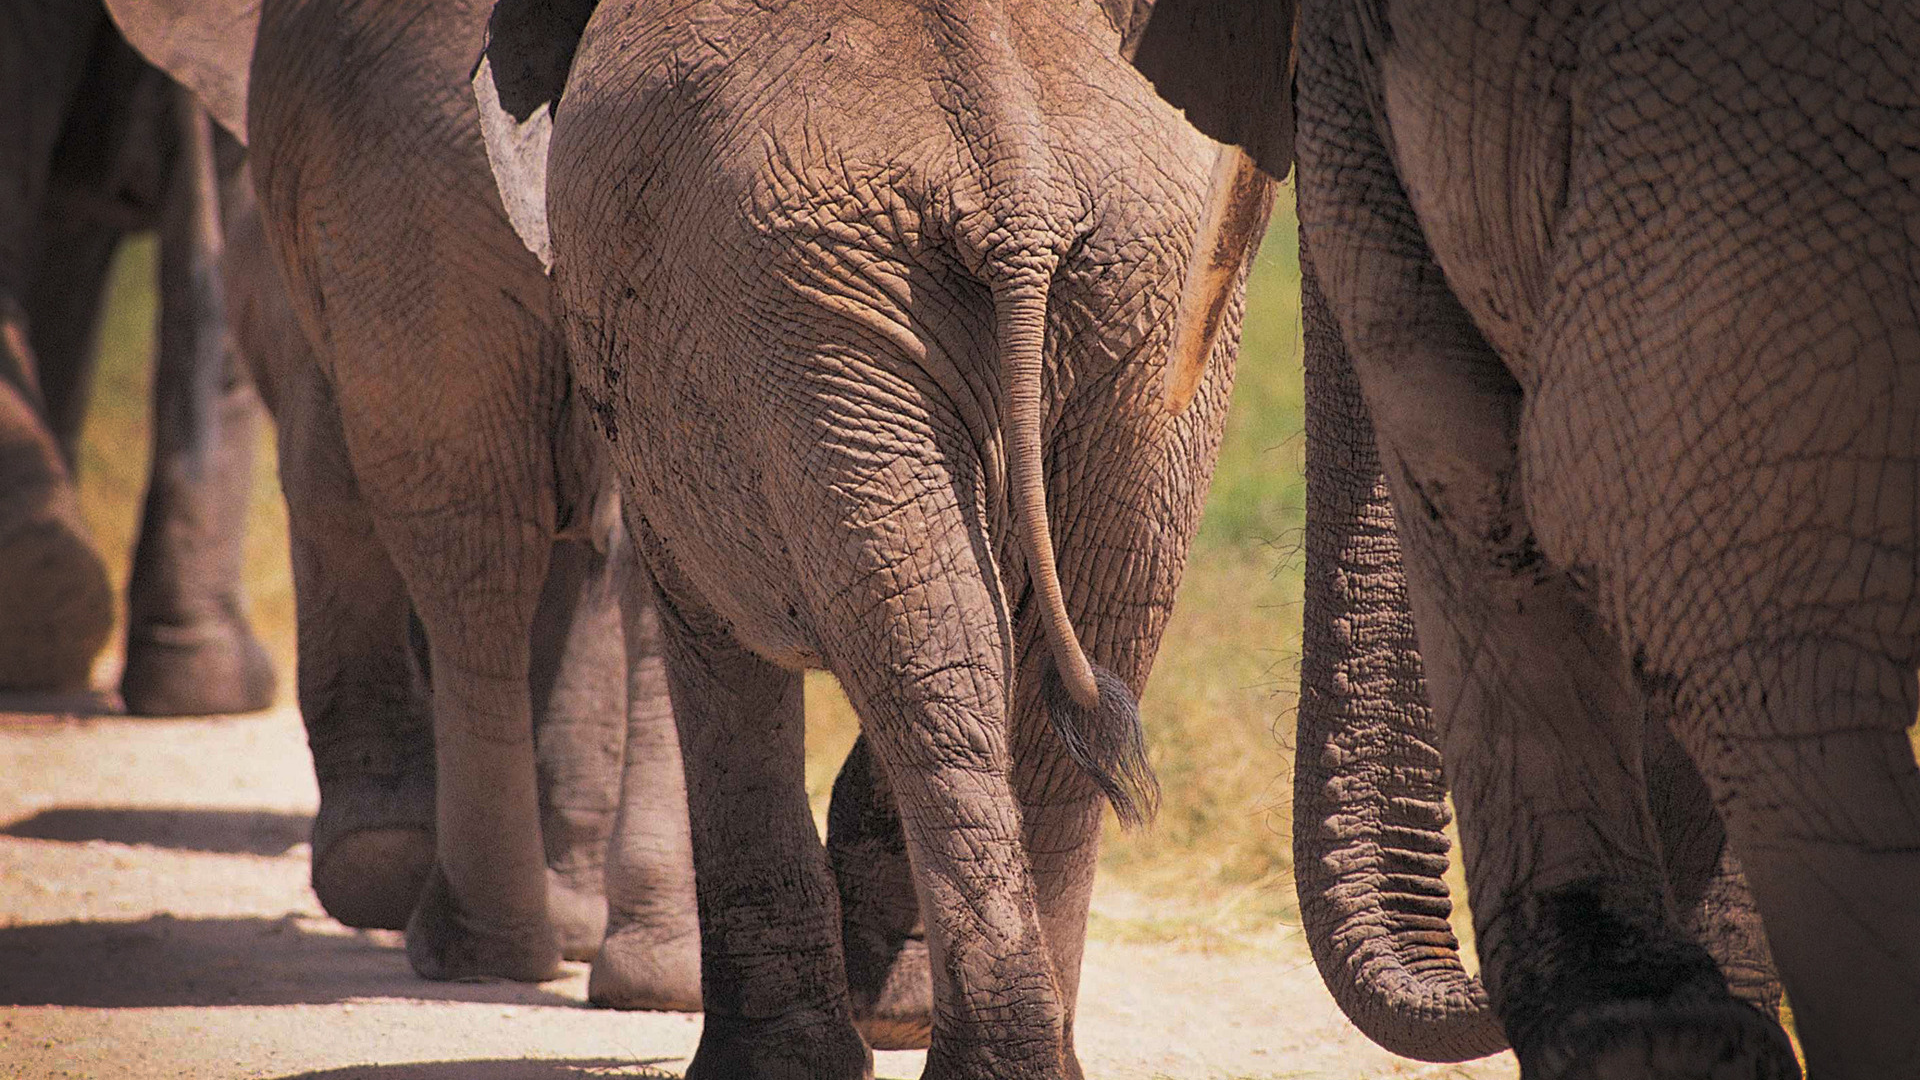 фото слонов, слоны, животные, большие животные, африка, elephants